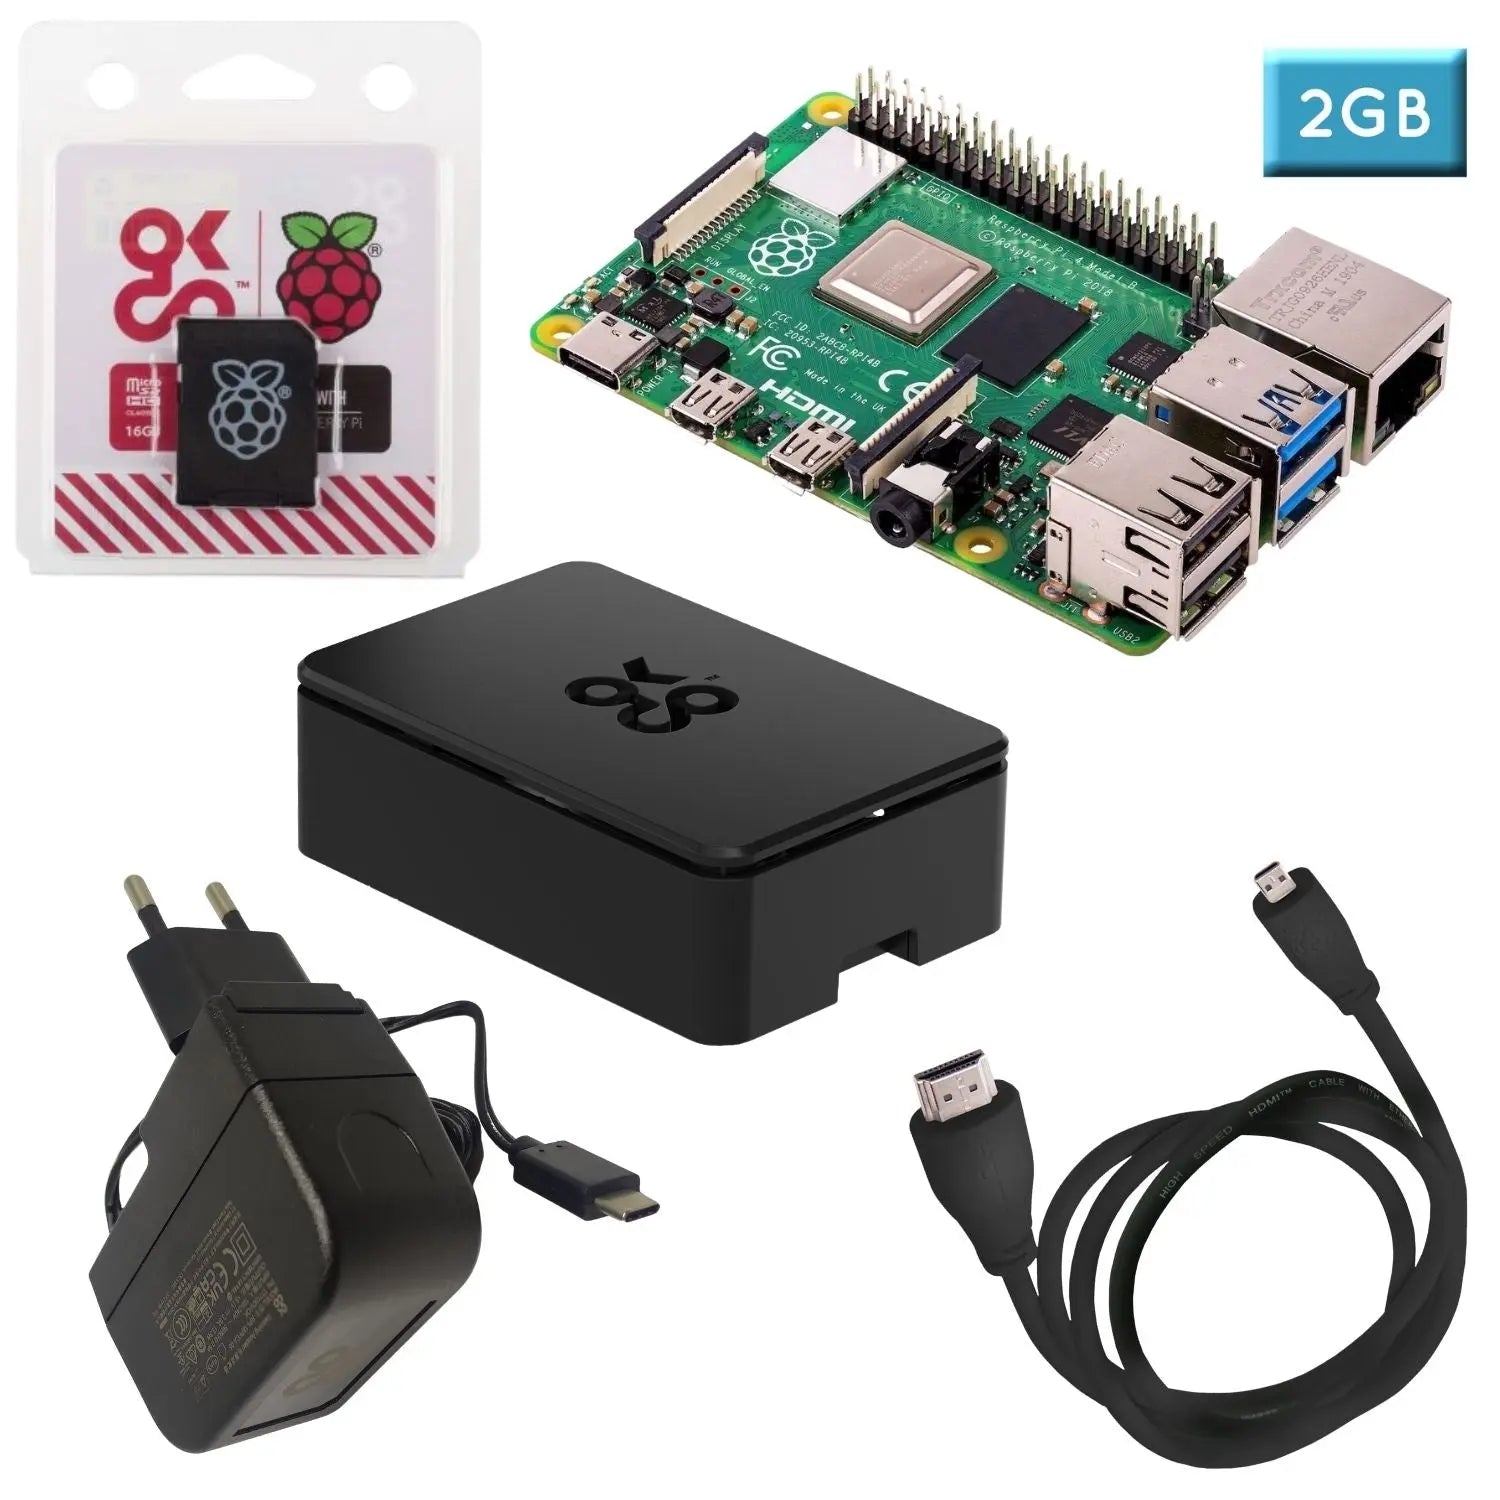 OKdo Raspberry Pi 4 Modell B 2GB Essential Starter Kit